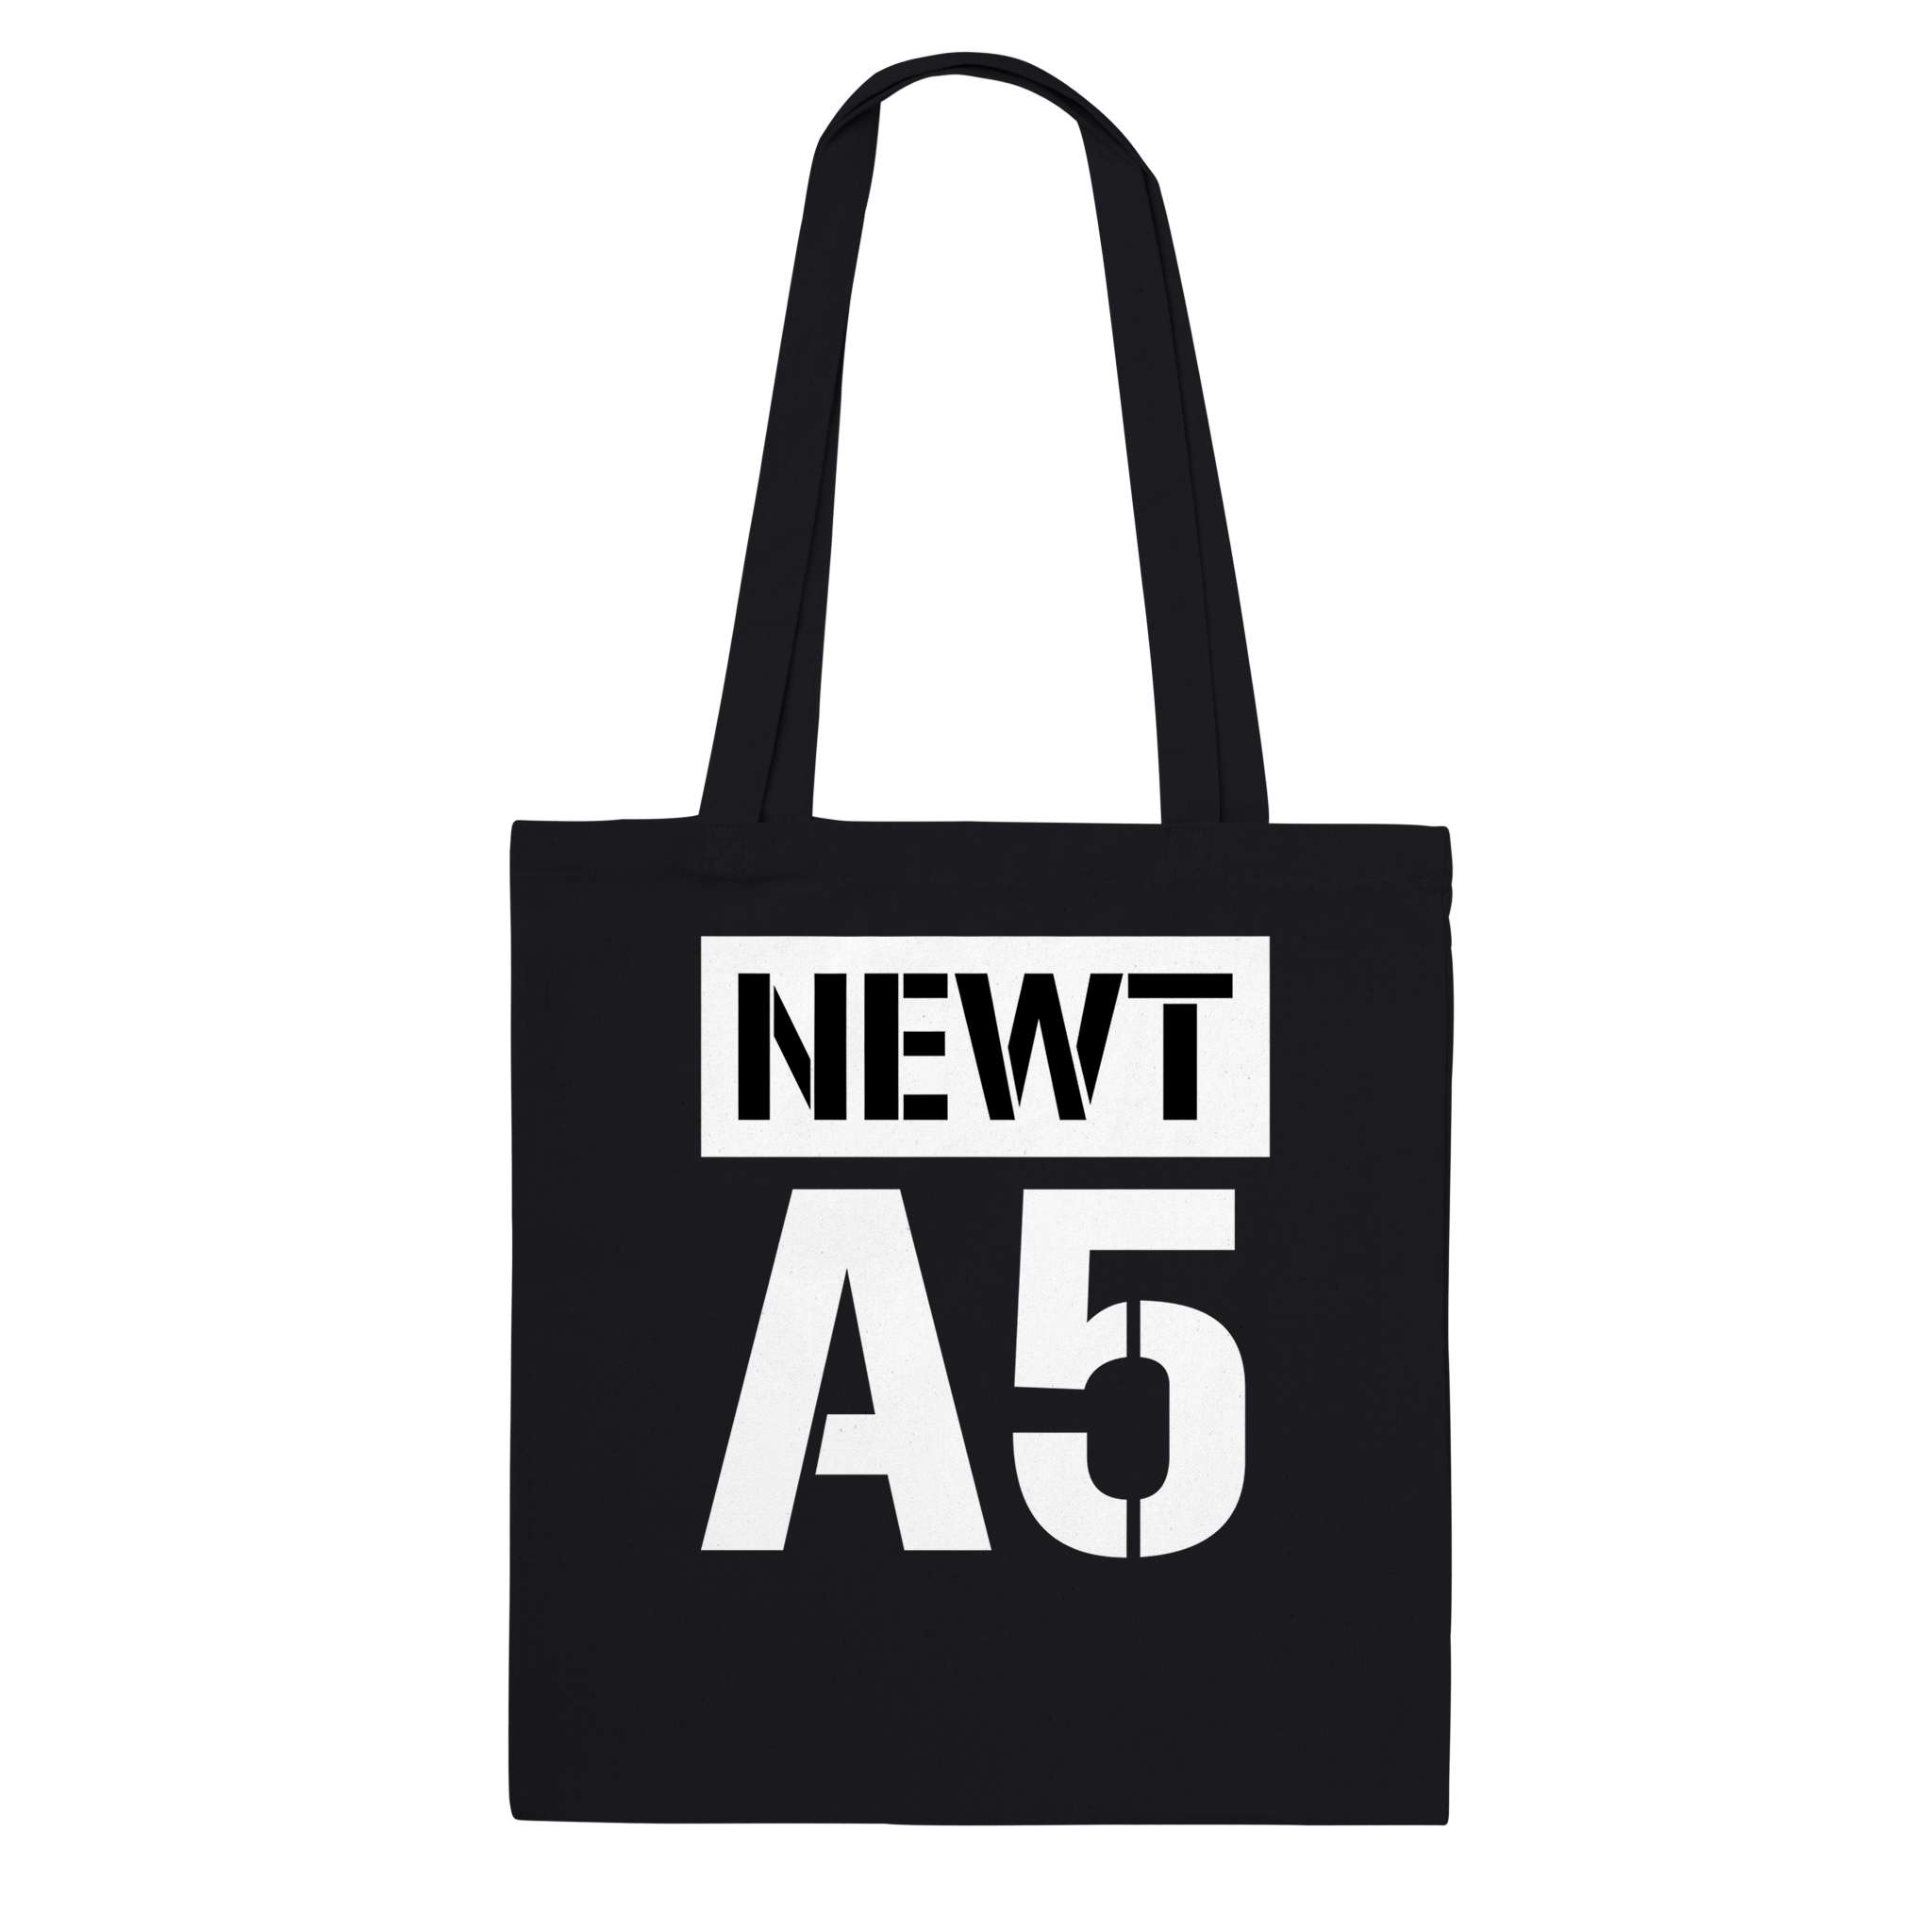 Tote bag Newt A5